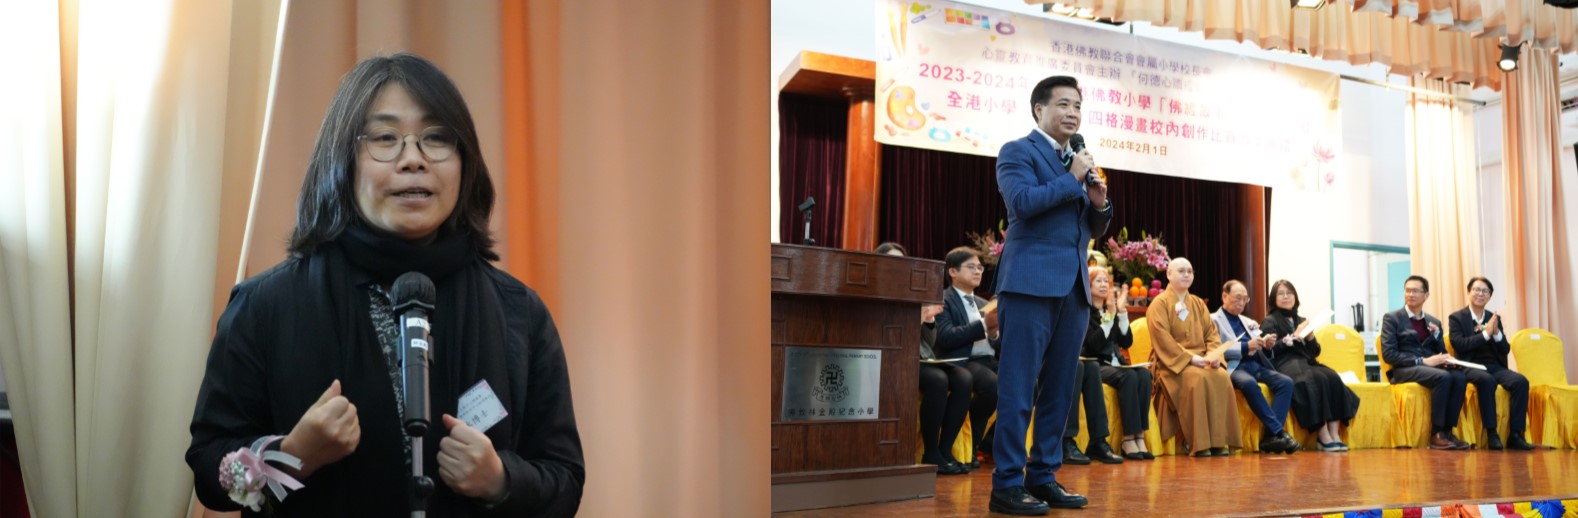 王冰博士(左圖)建議參賽者增加跟觀眾的互動，吳永雄校長(右圖)致謝辭。